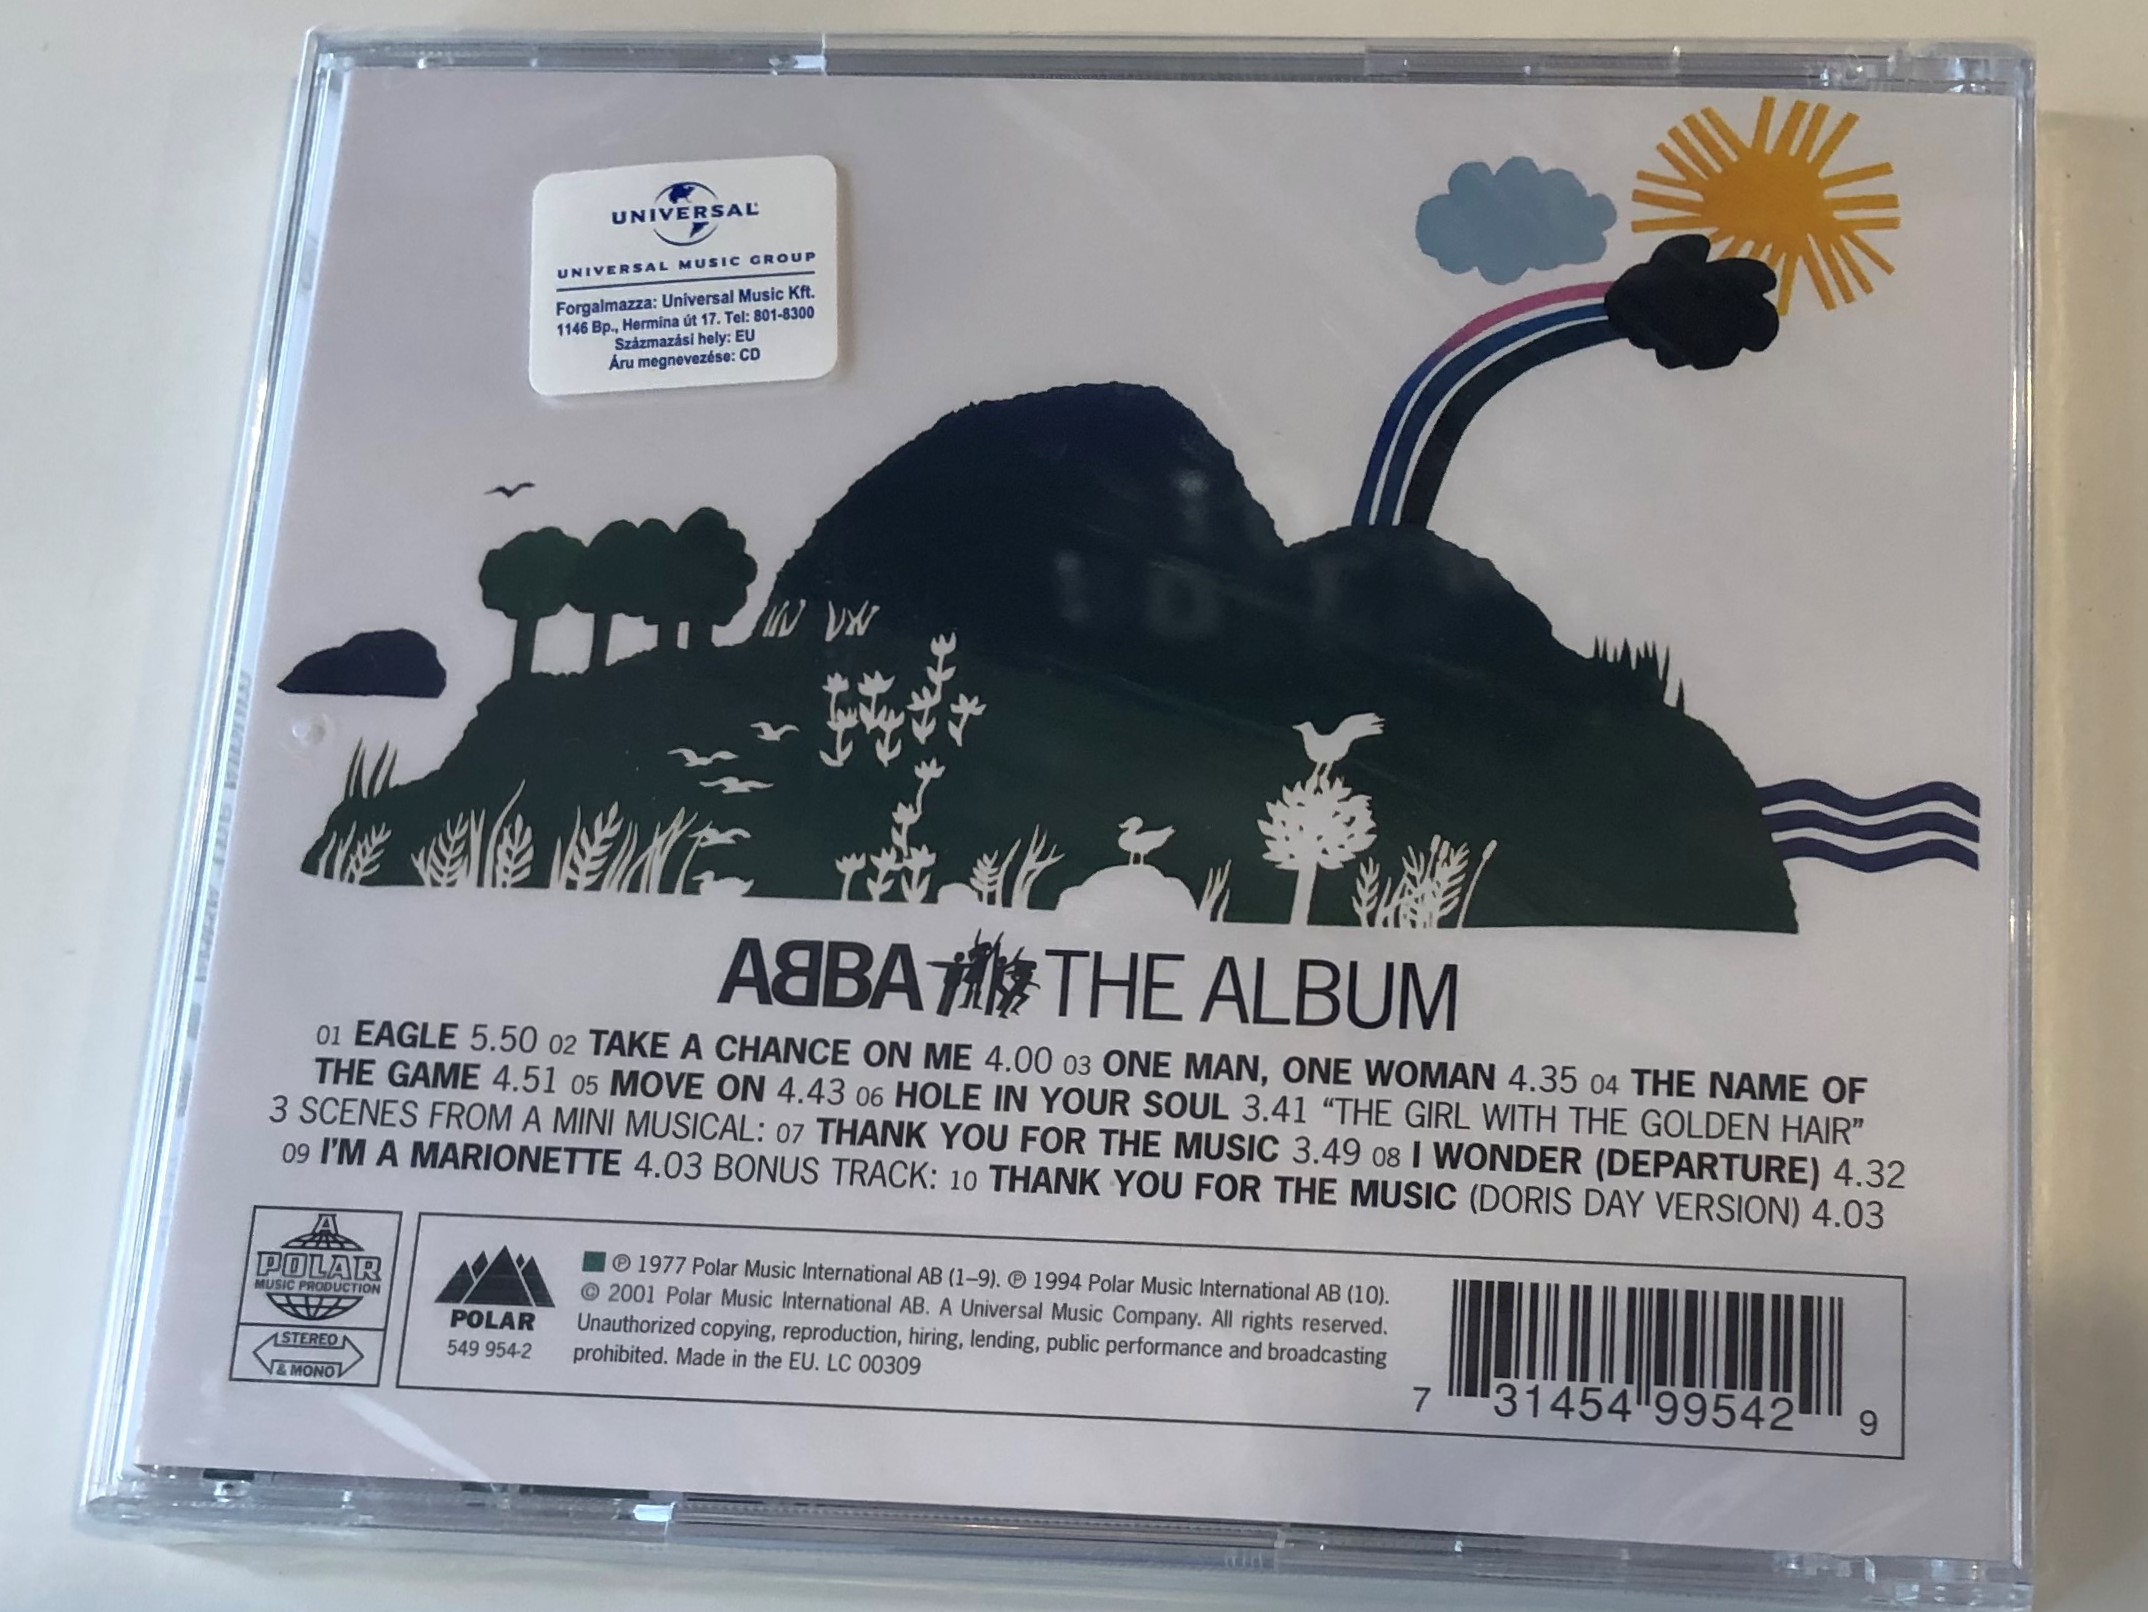 abba-the-album-polar-audio-cd-2001-stereo-mono-549-954-2-2-.jpg